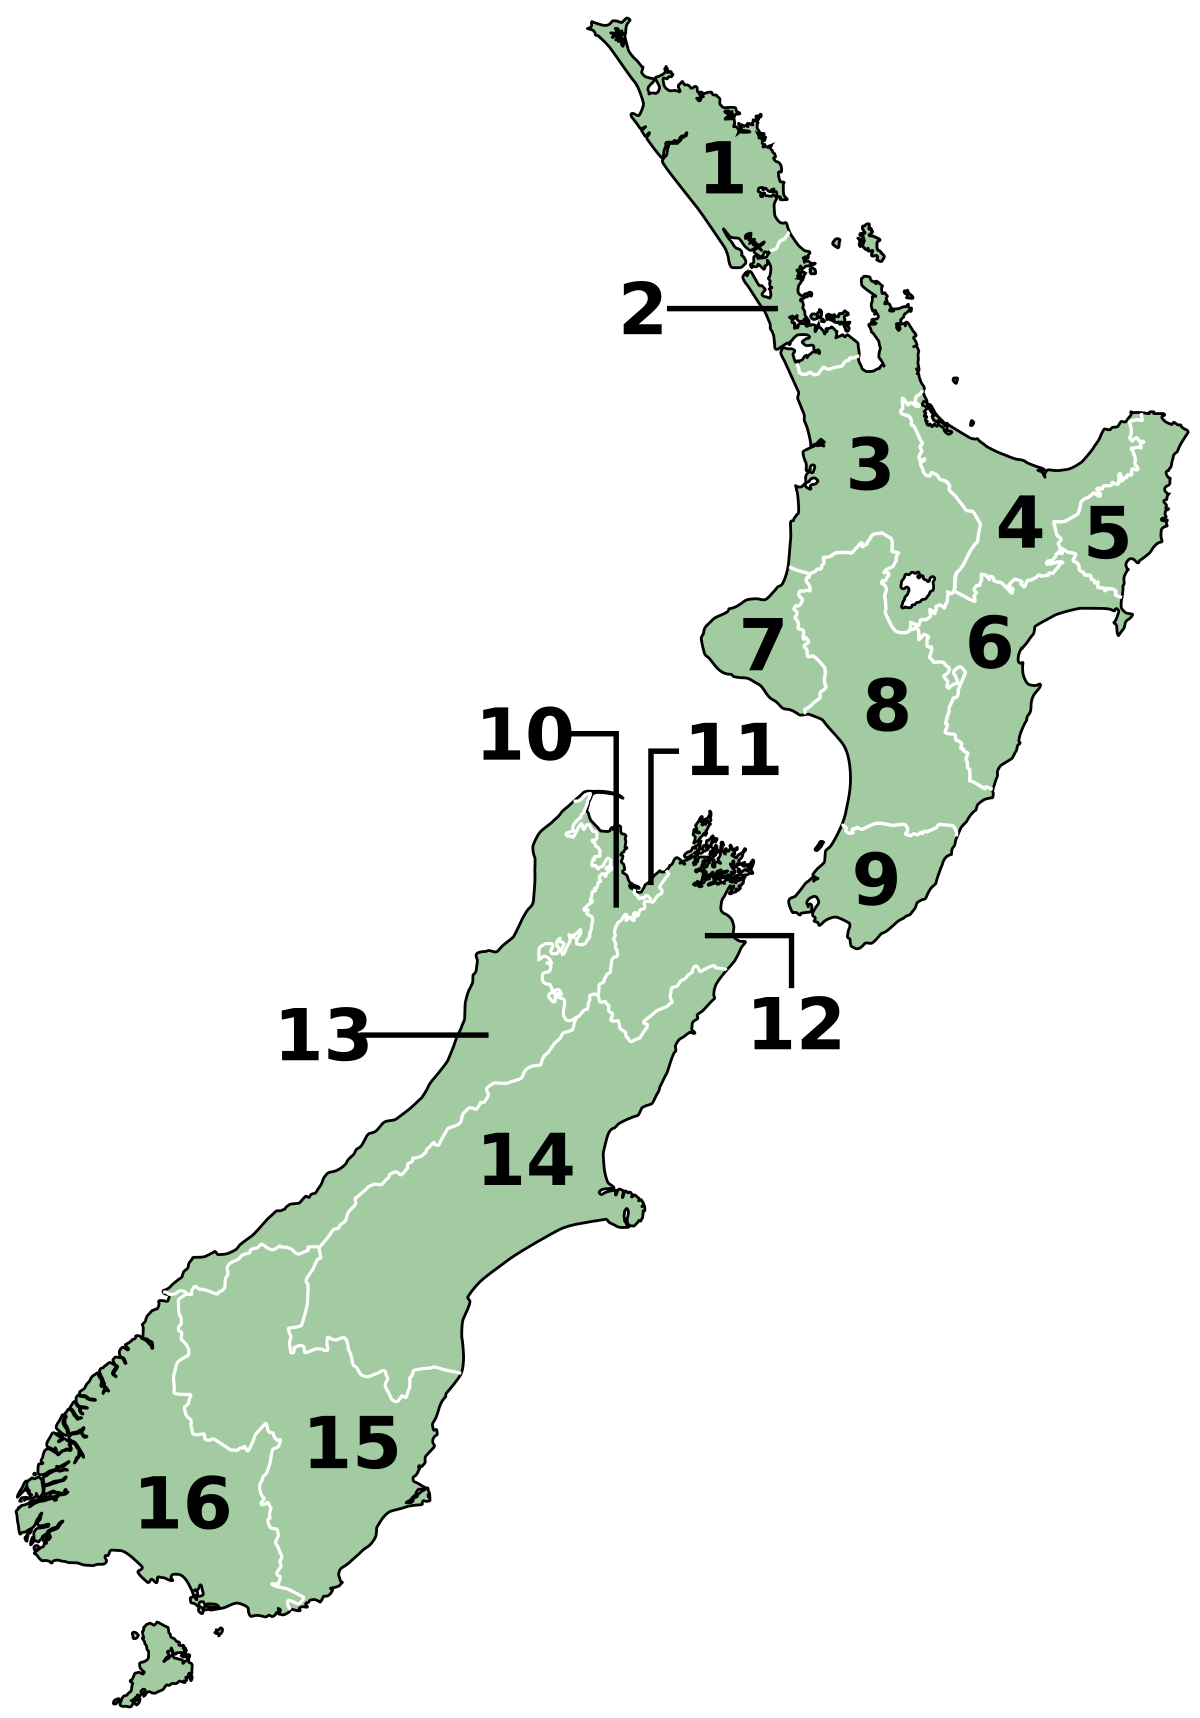 ニュージーランドの地方行政区画 Wikipedia